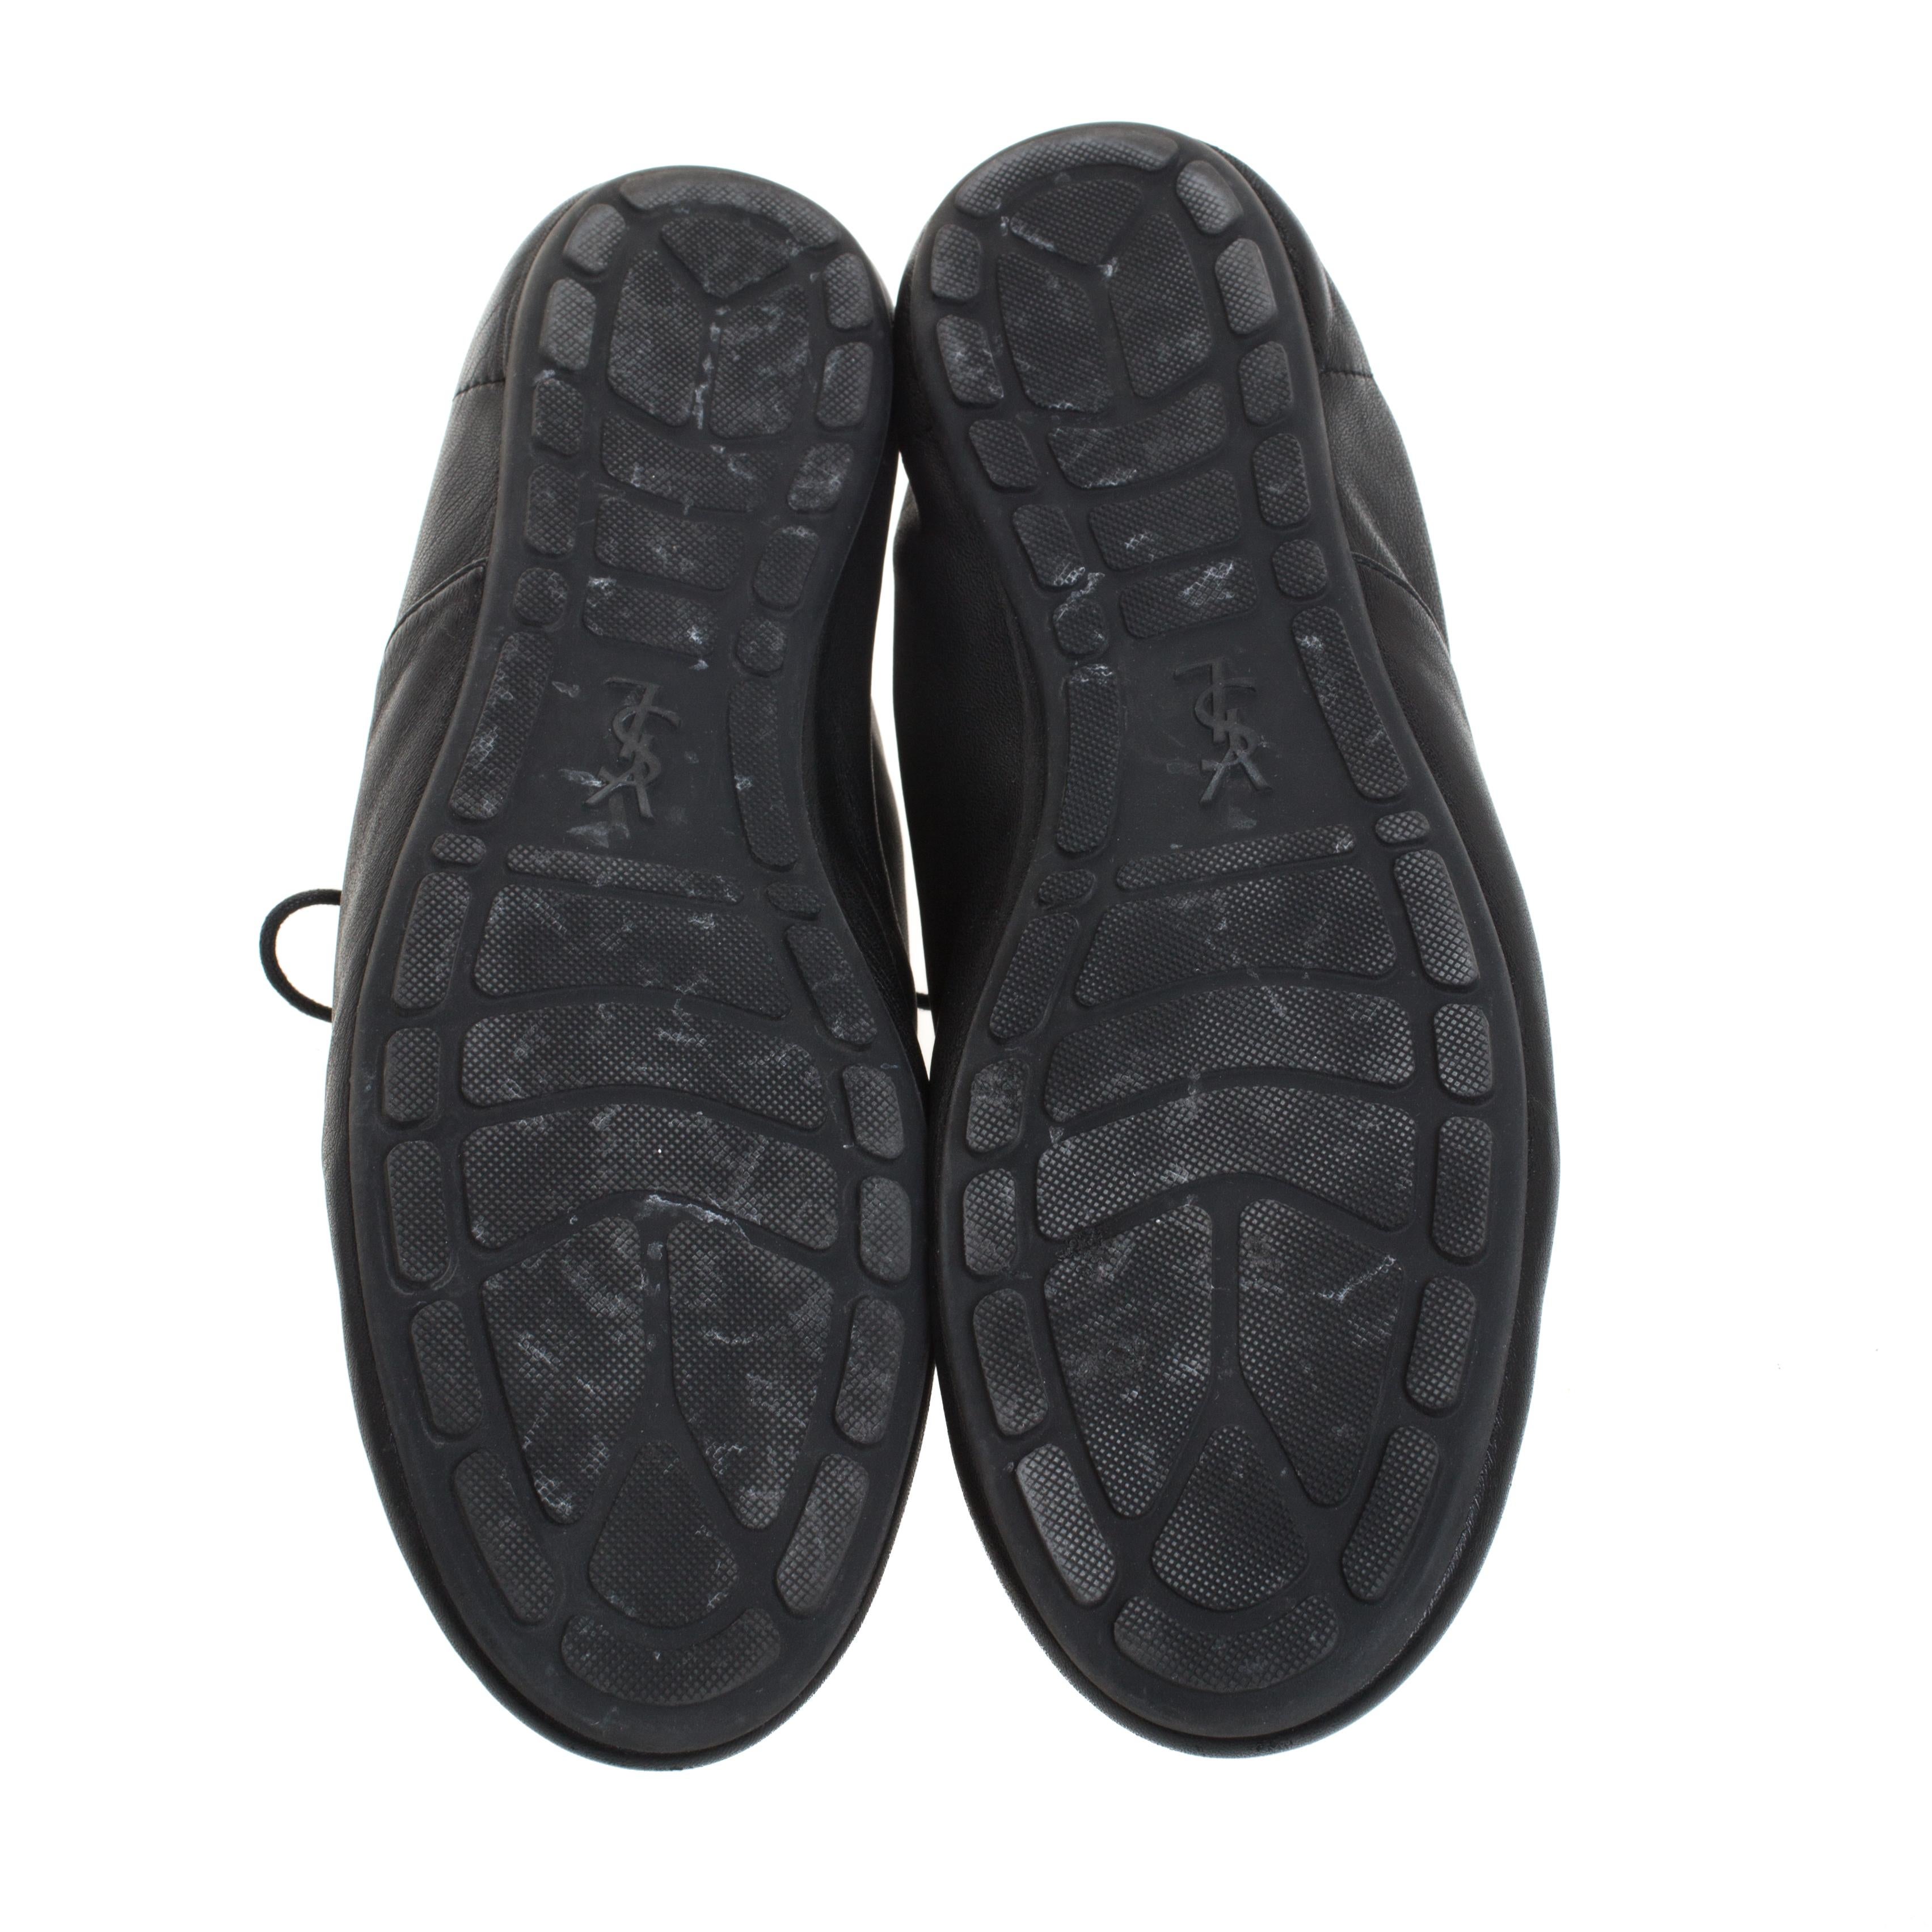 Saint Laurent Paris Black Leather Lace Up Zip Up Low Top Sneakers Size 42 2